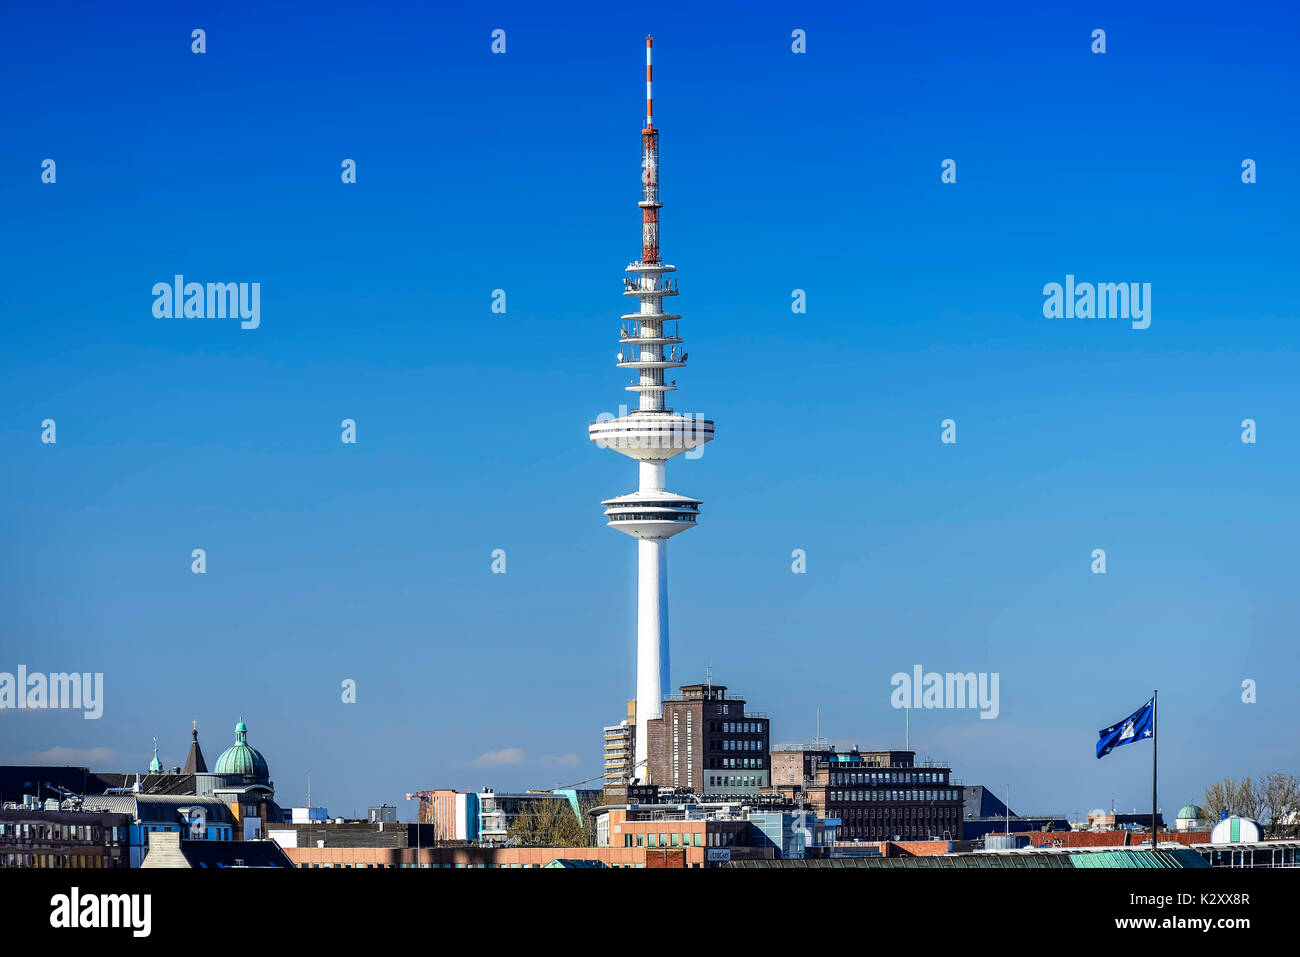 Torre de televisión Heinrich Hertz torre en Hamburgo, Alemania, Europa, Fernsehturm Heinrich-Hertz-Turm en Hamburgo, Alemania, Europa Foto de stock